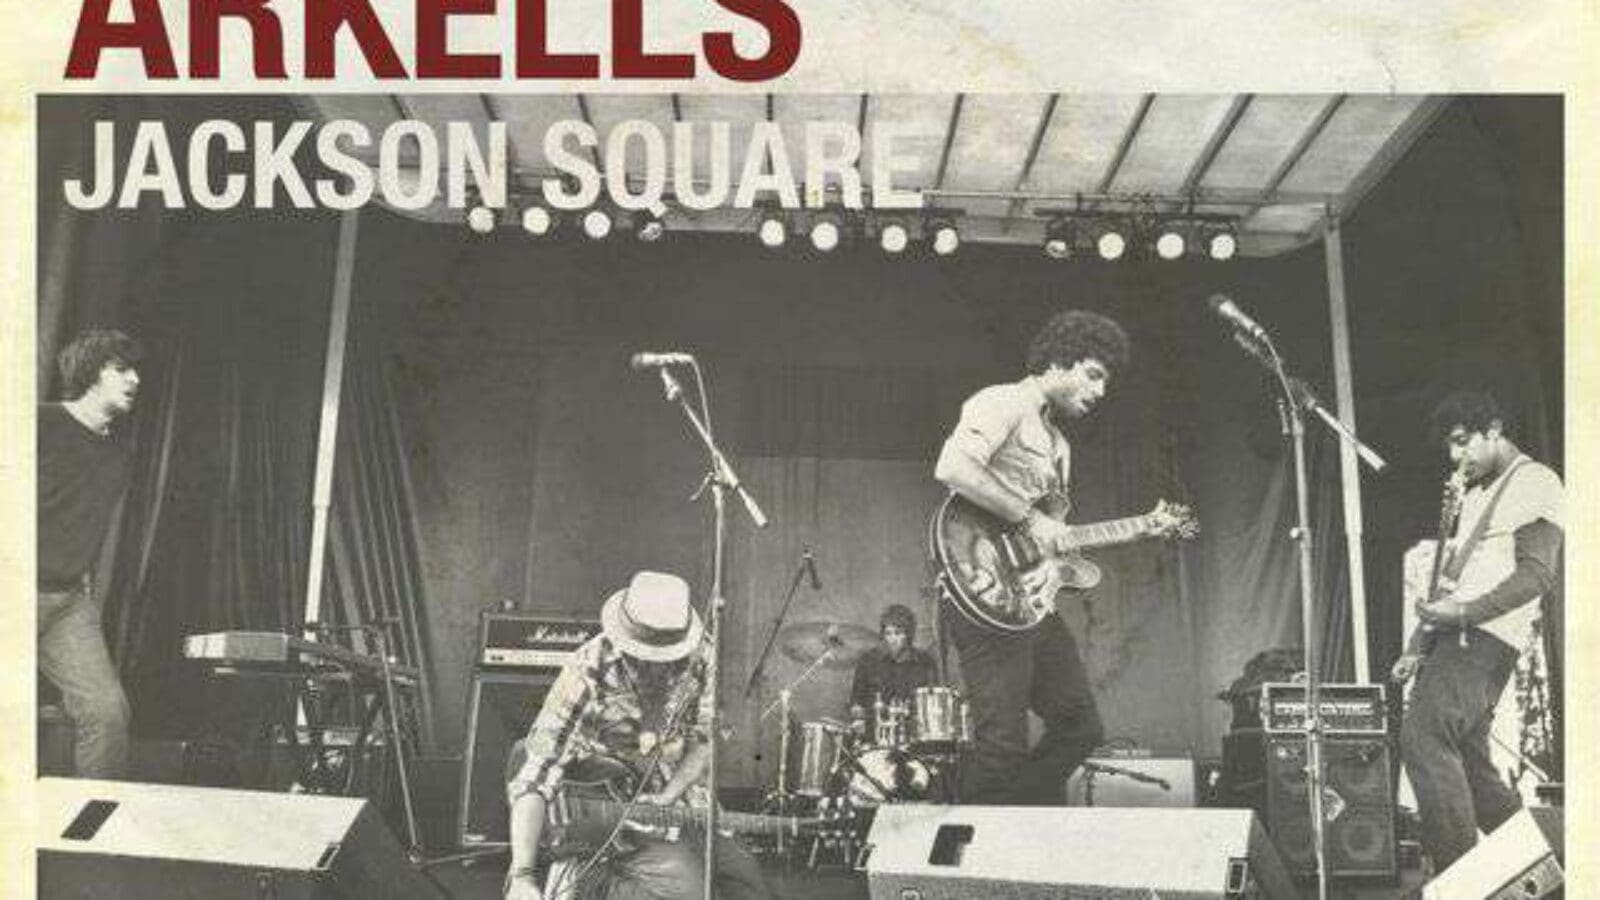 ARKELLS – Jackson Square